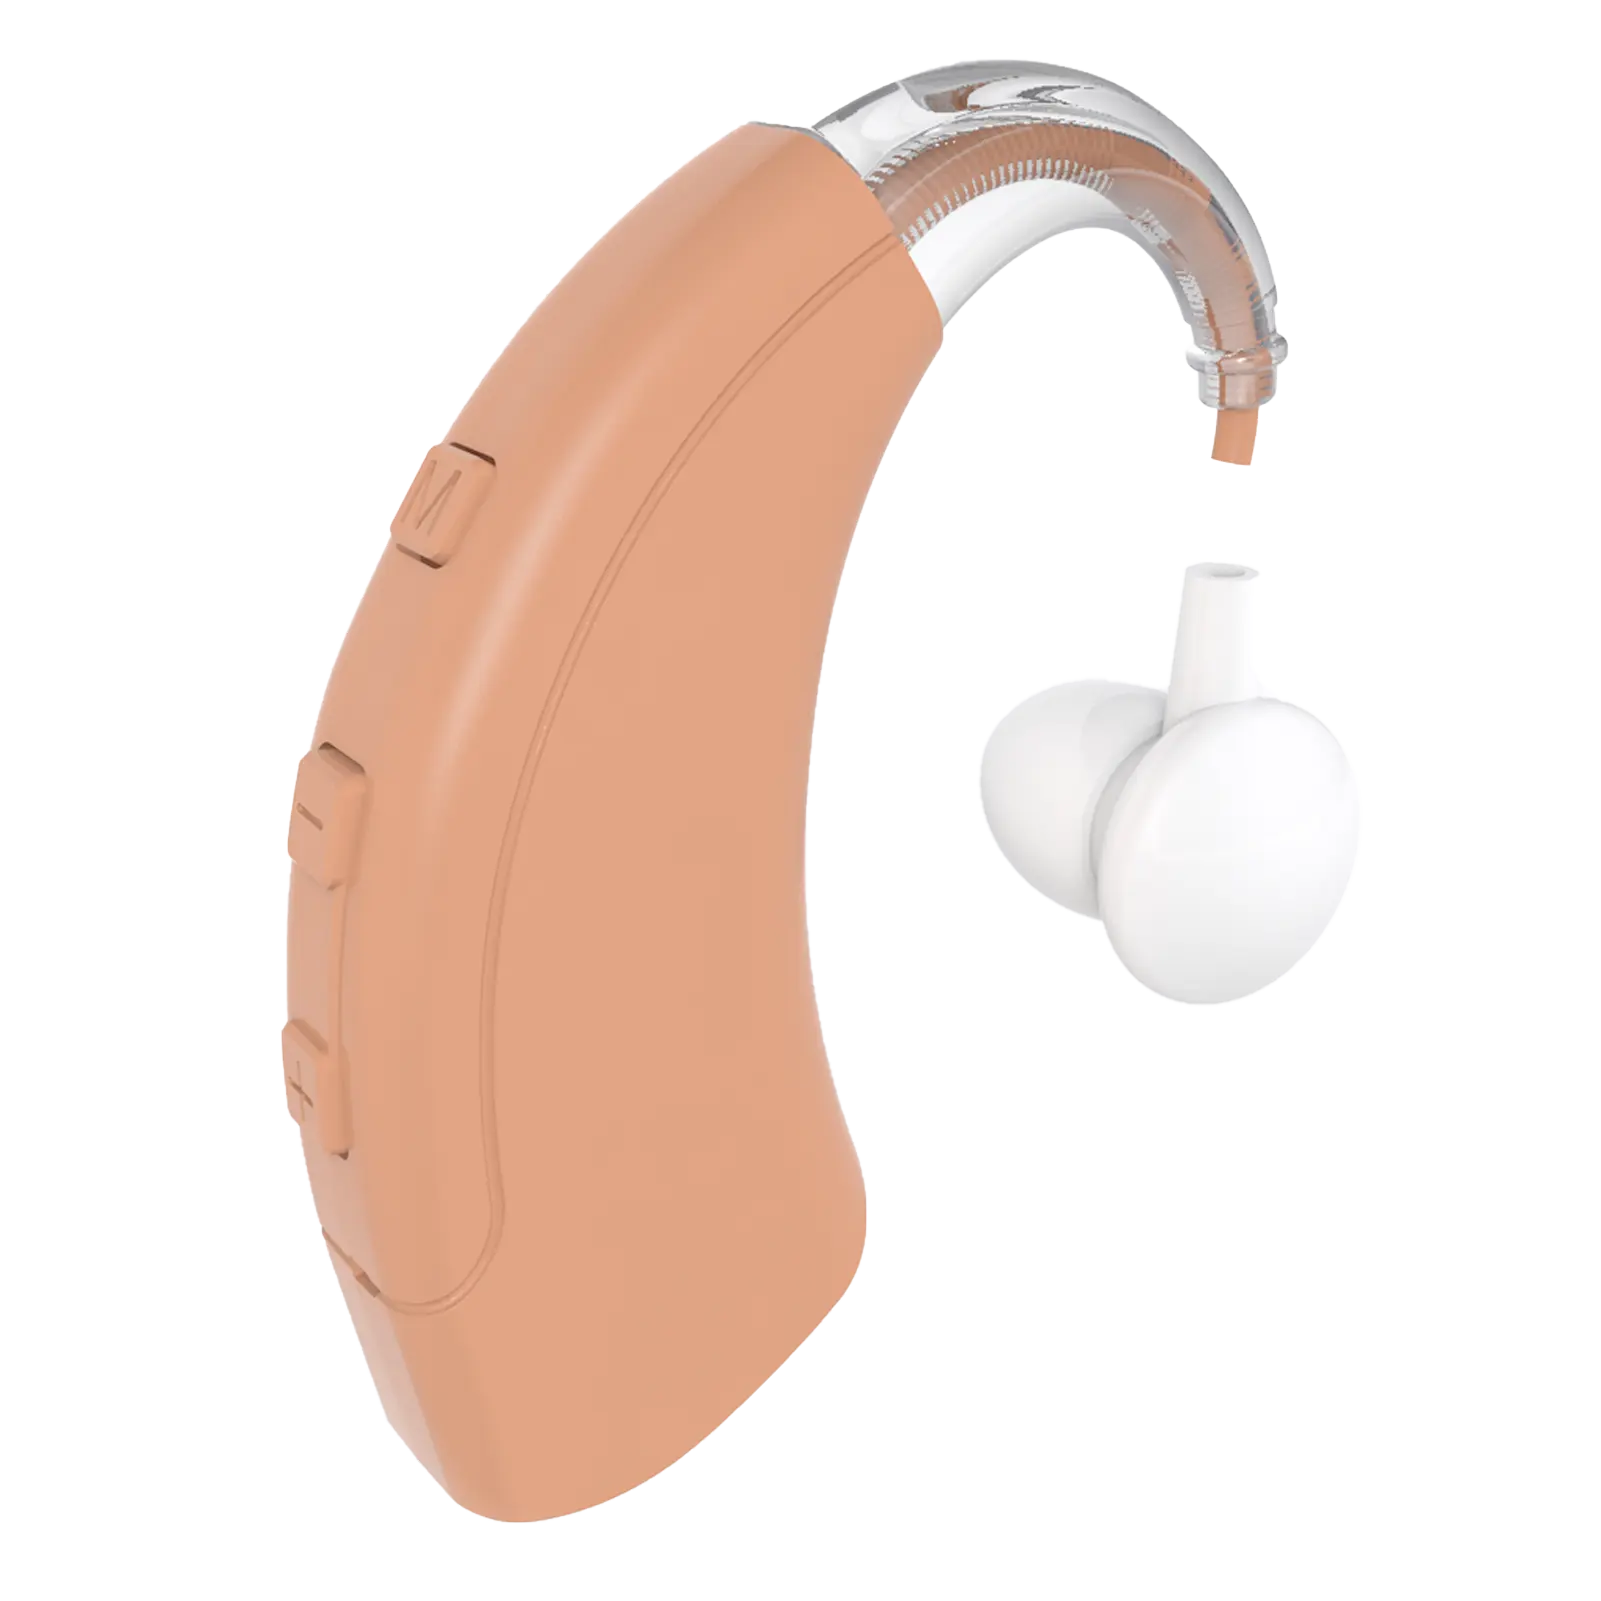 BTE amplificateur de son machine acheter pas cher prix sourd oreille rechargeable prothèse auditive pour personnes âgées